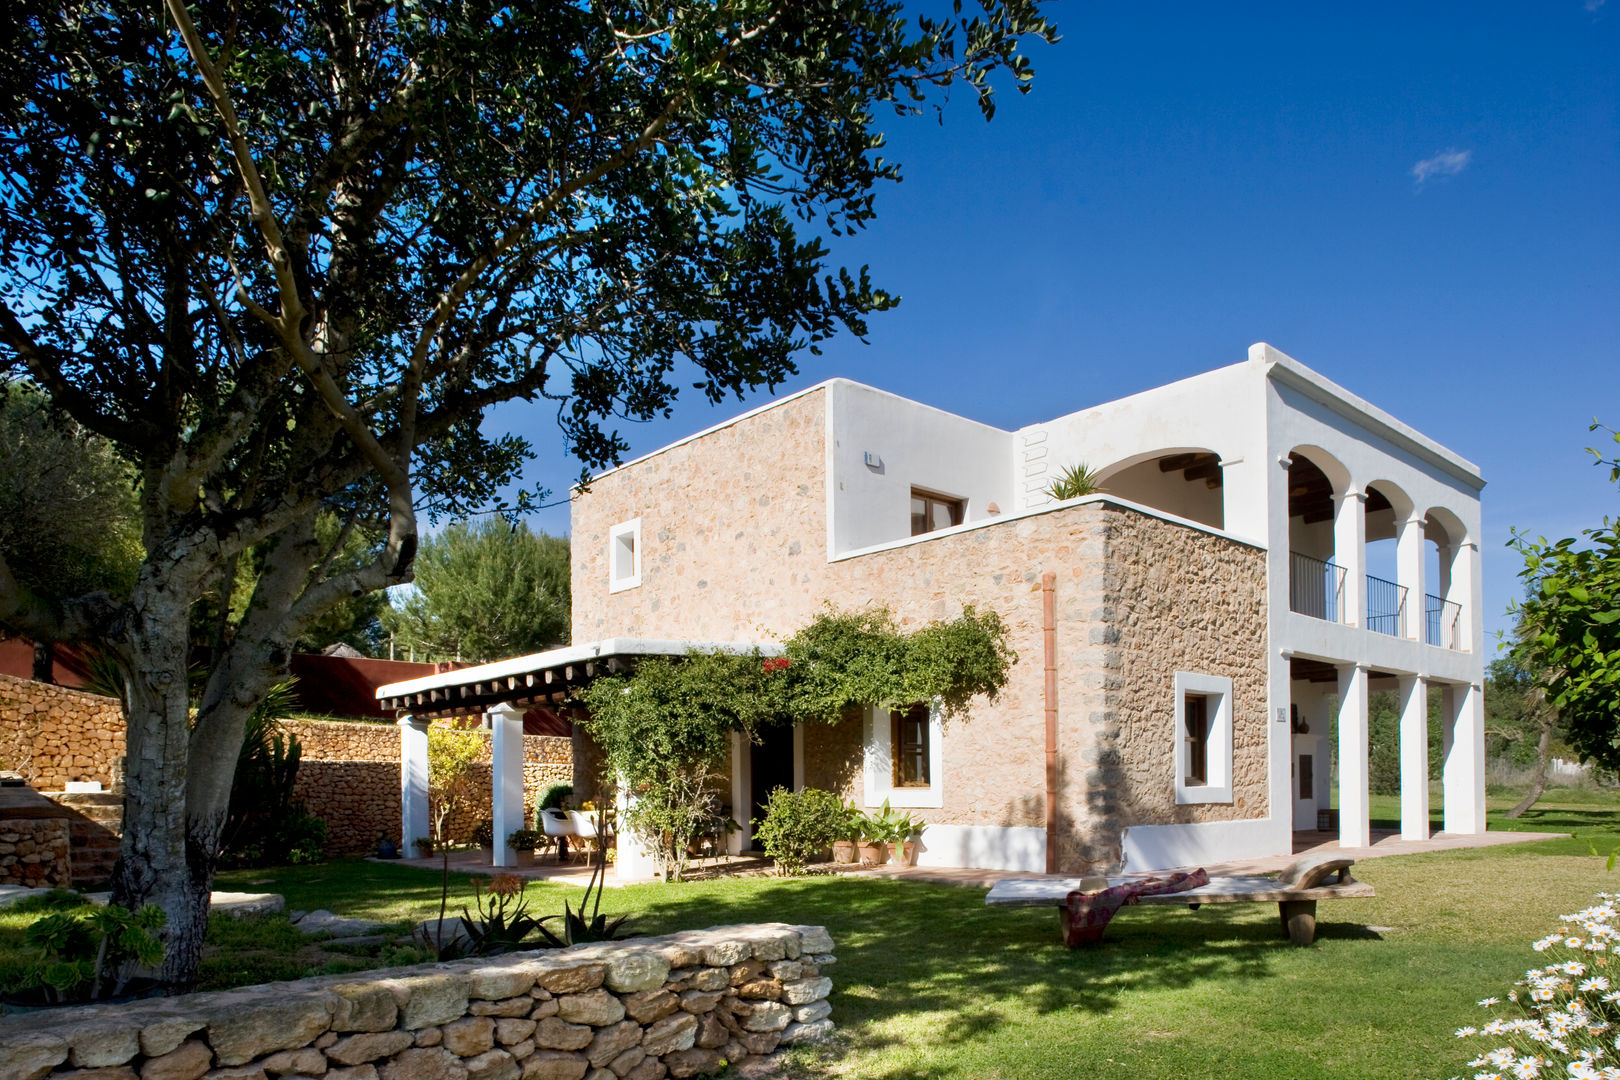 Casa en Ibiza, recdi8 recdi8 Wiejskie domy